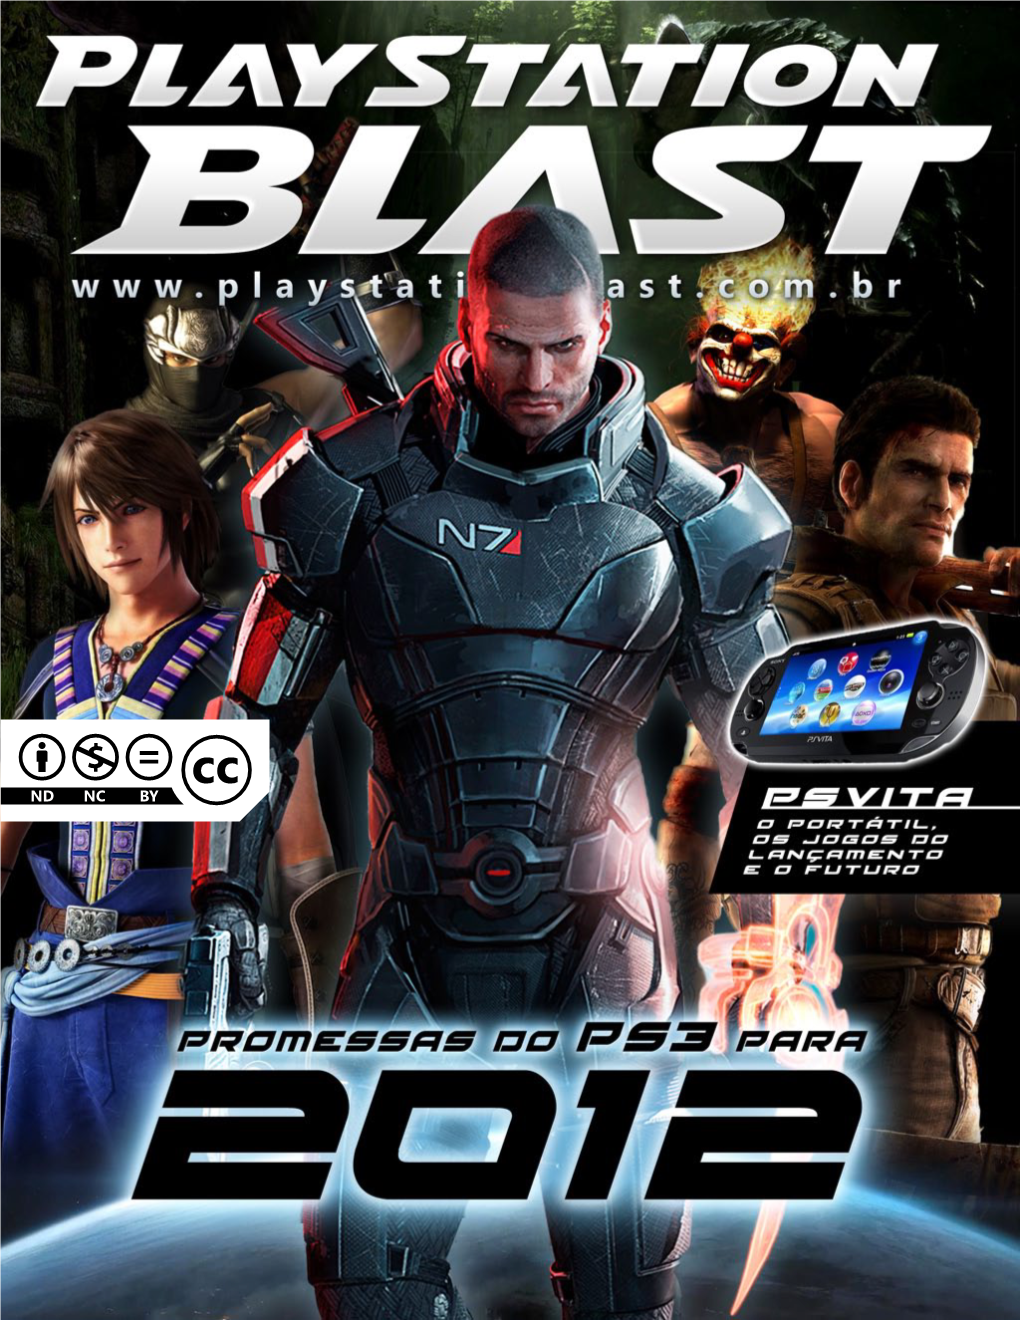 Revista Playstation Blast, Você Confere As Maiores Promessas Para O PS3 Em 2012